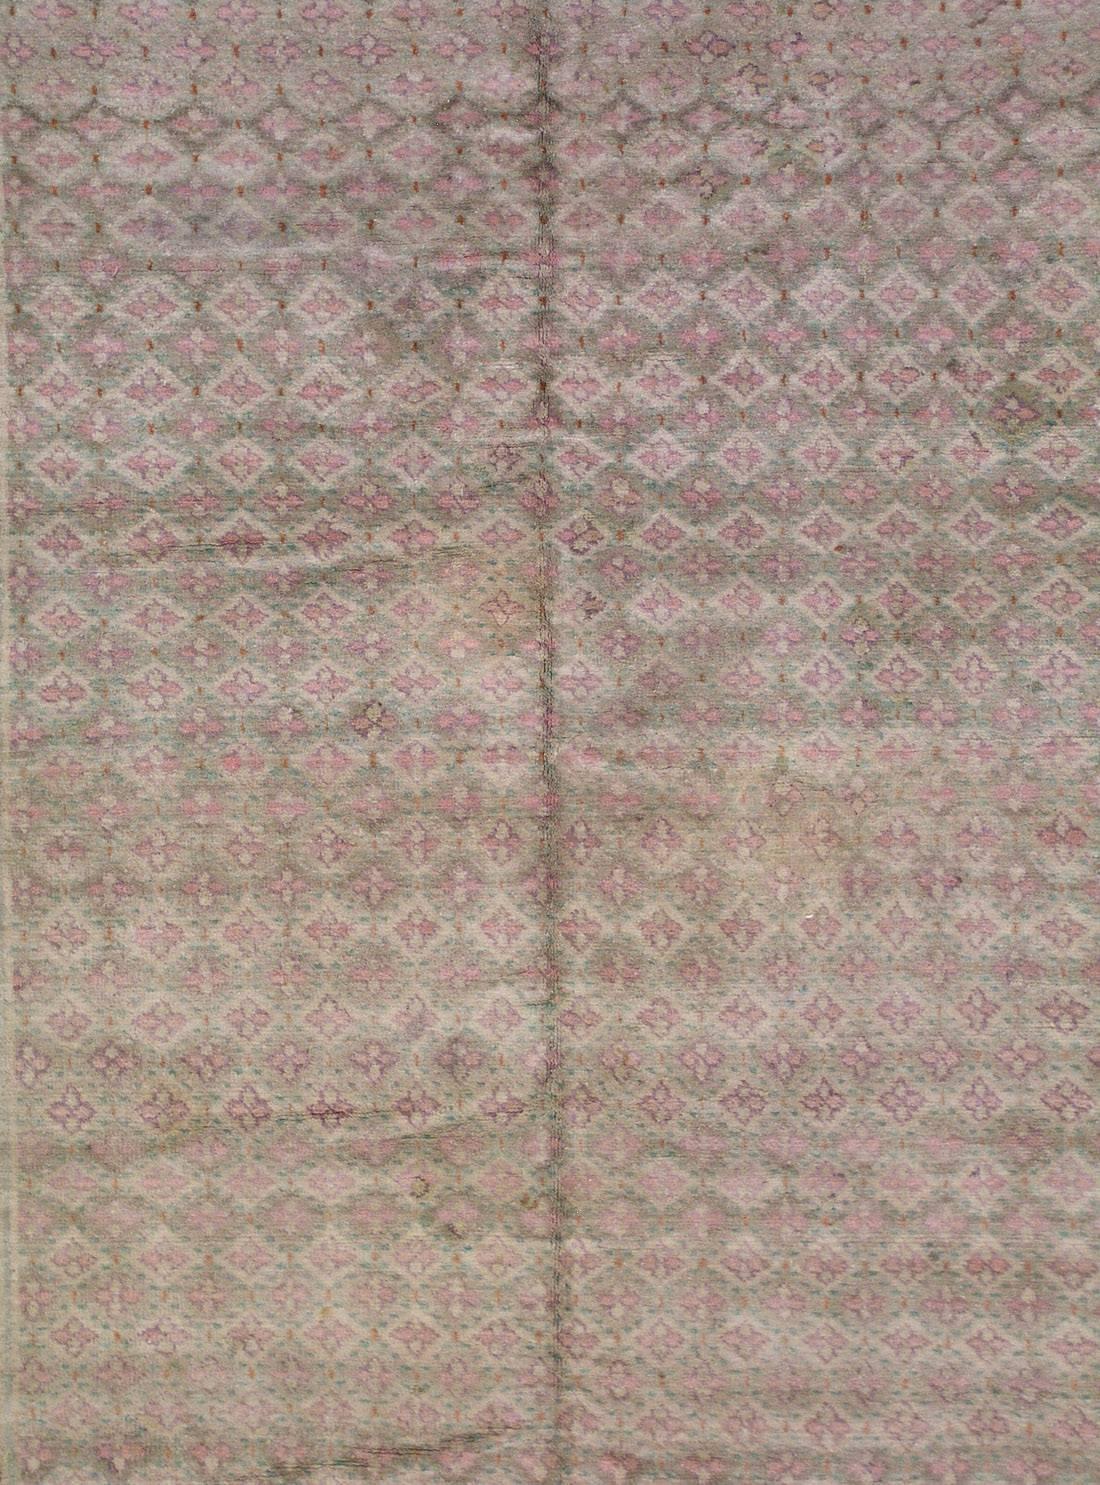 Antique Indian Agra cotton rug

circa 1930 

Measures: 6' 7